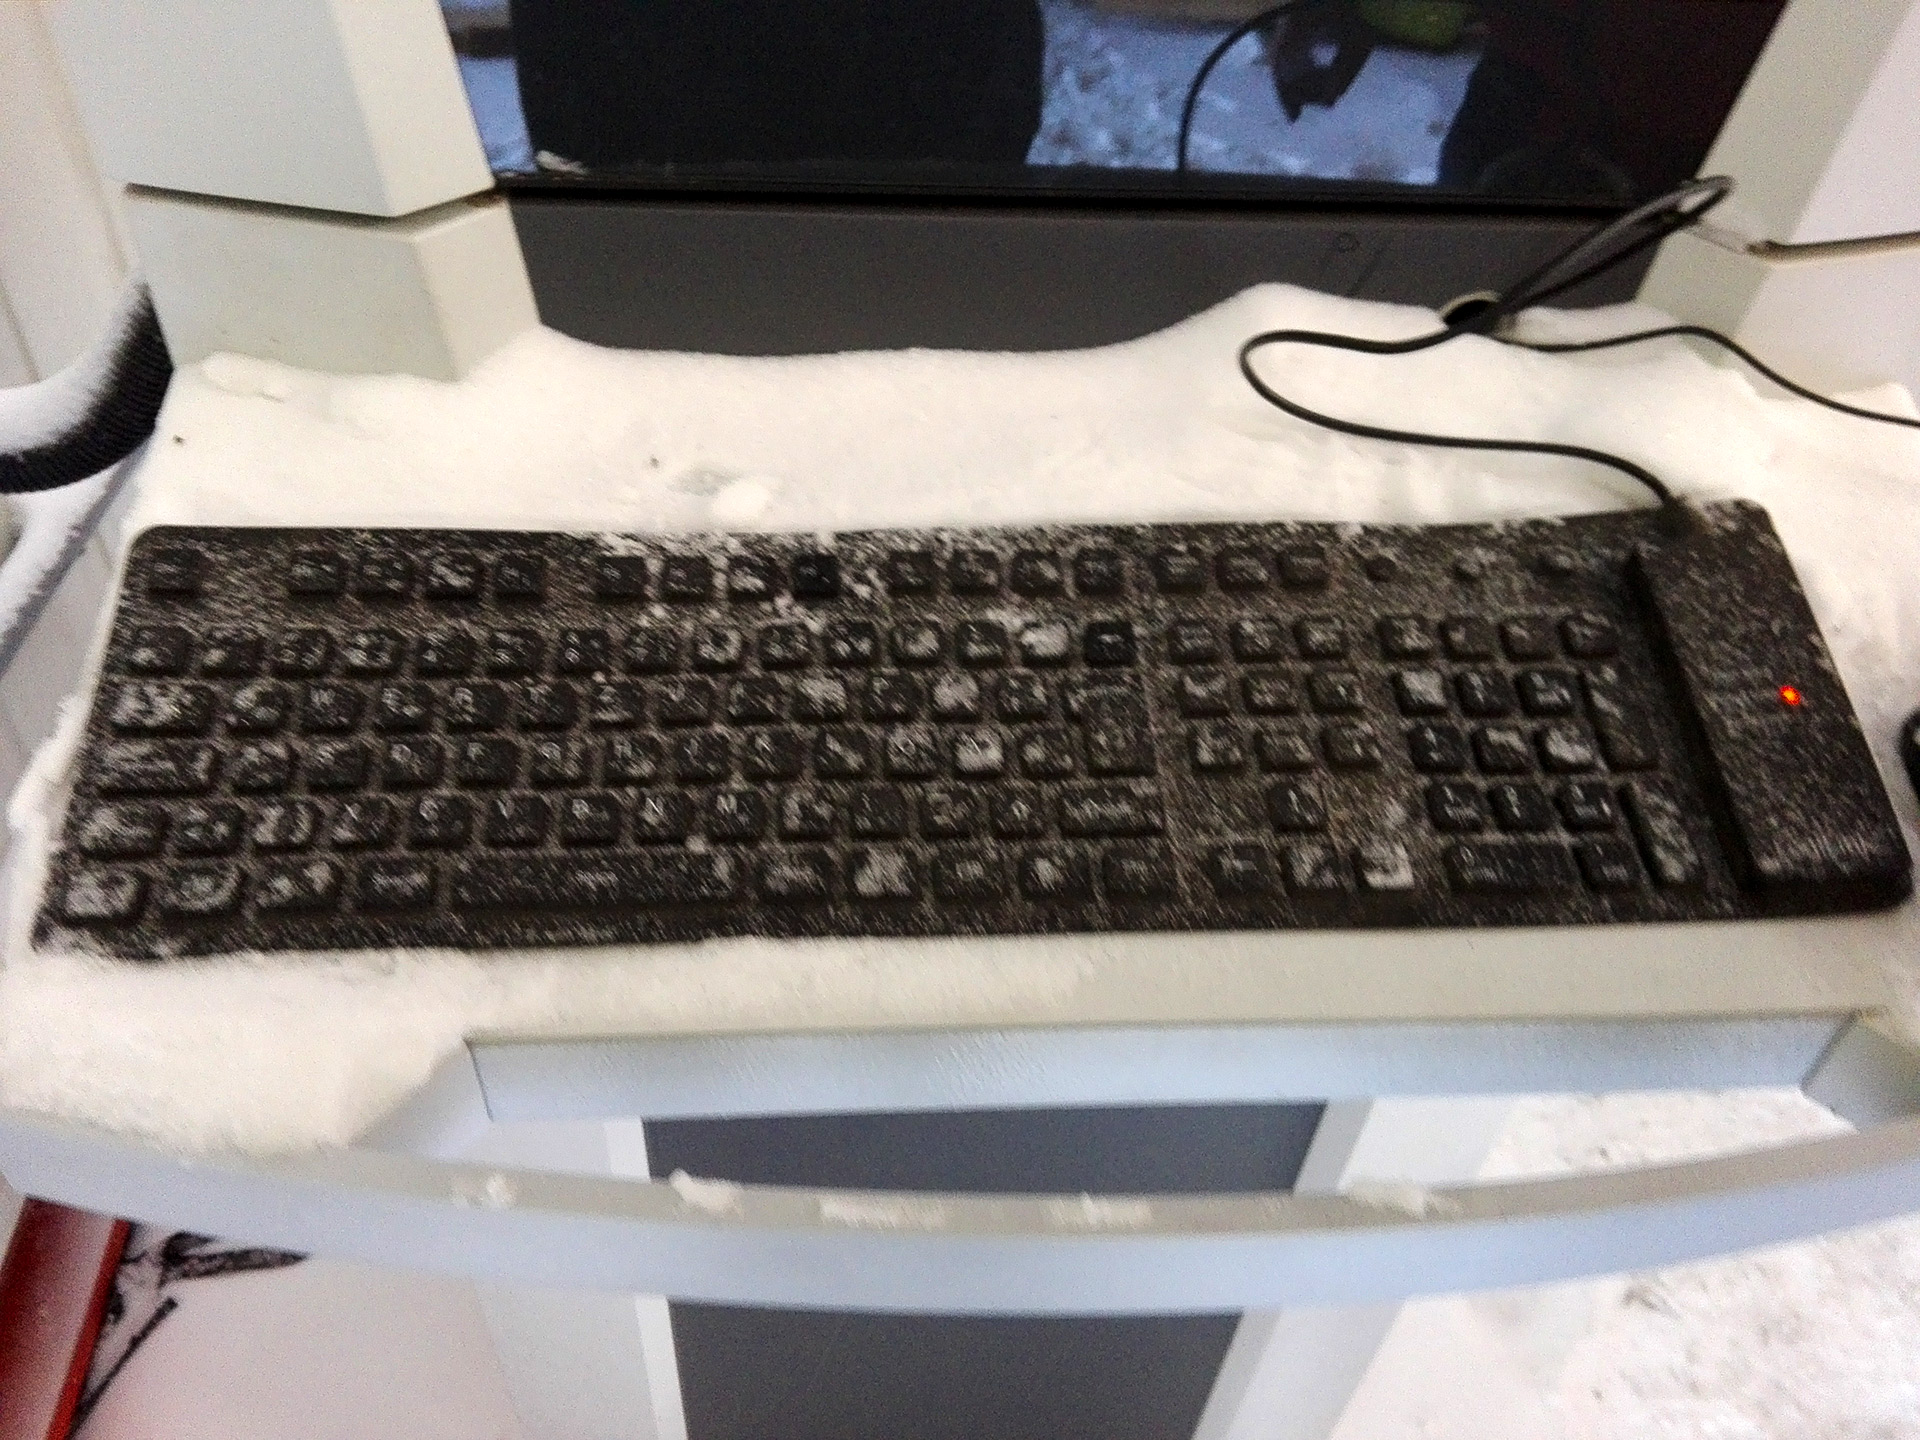 Tastatur im Schnee